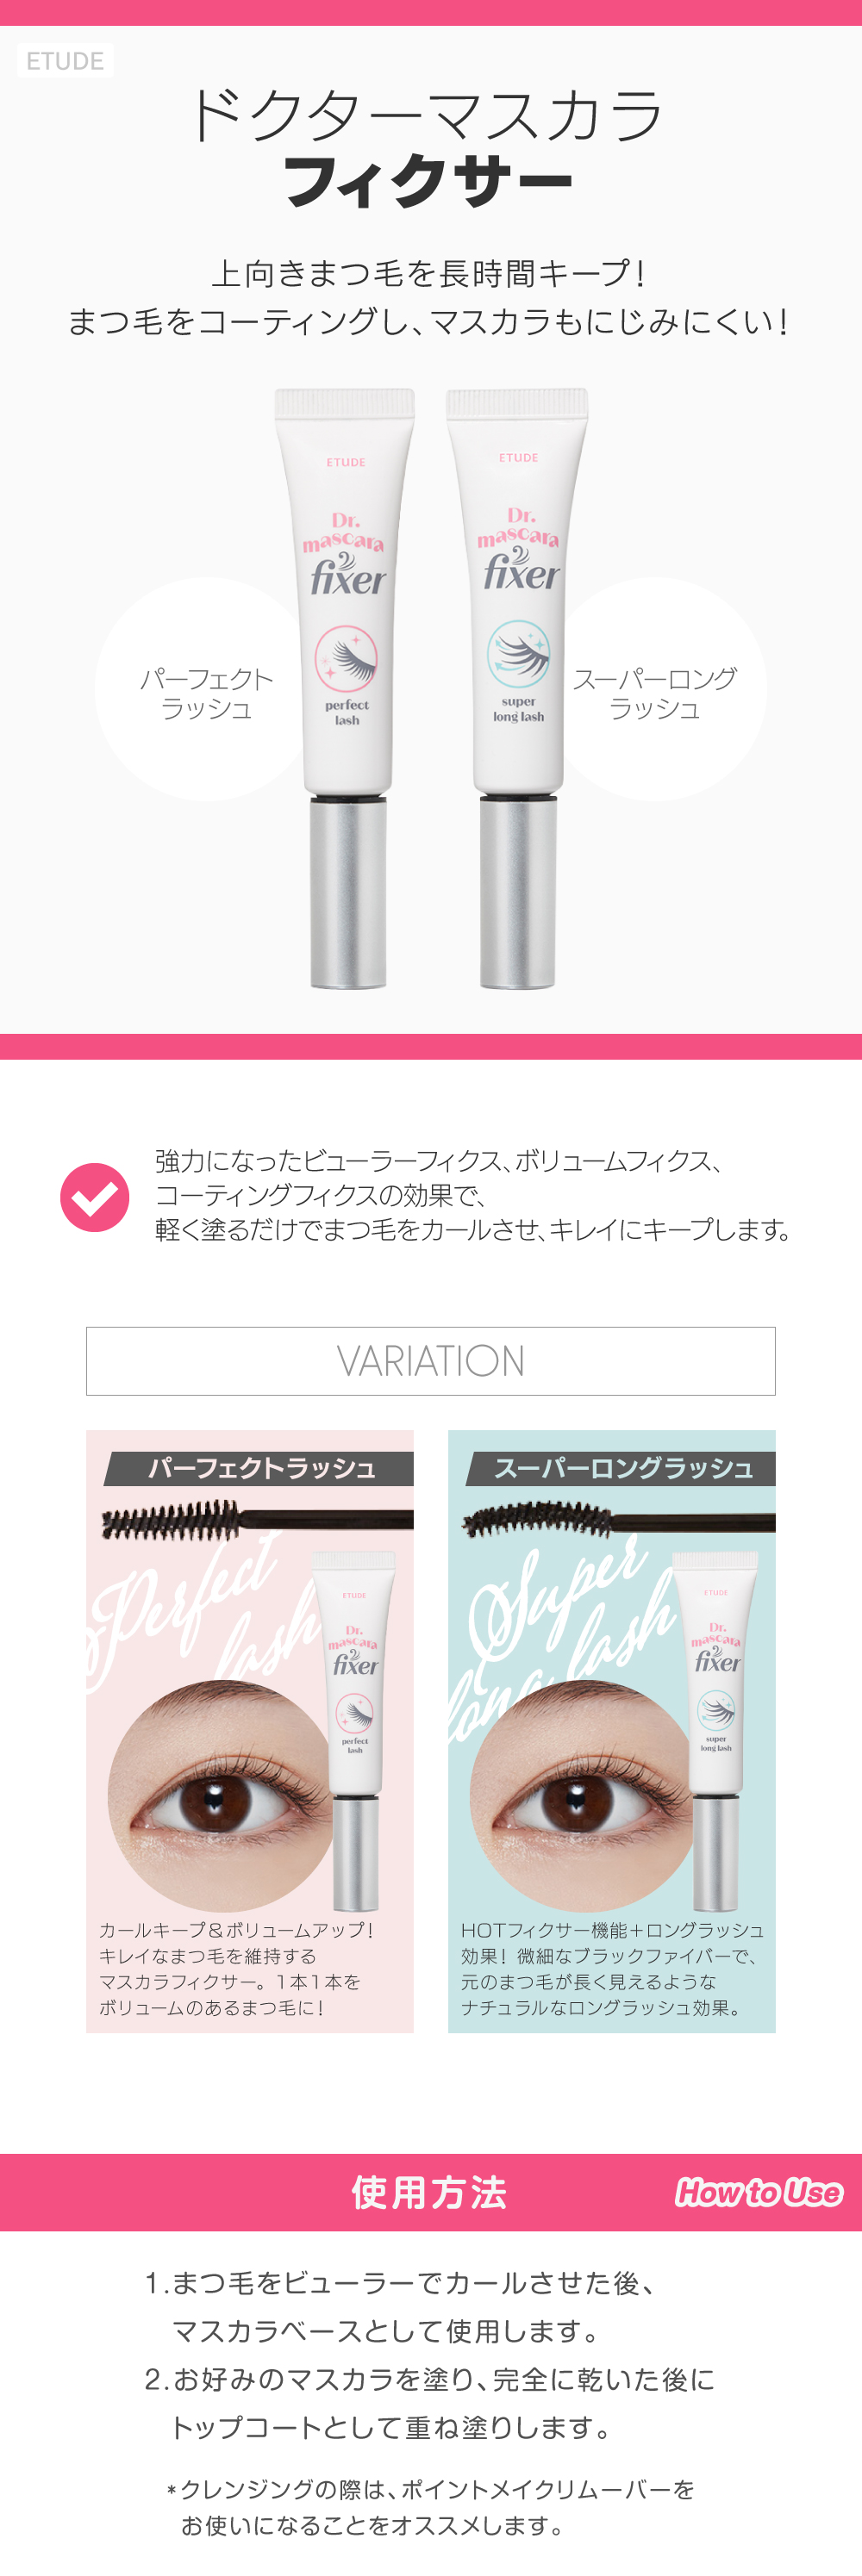 ドクターマスカラフィクサー skin holic 日本公式 オンラインショップ